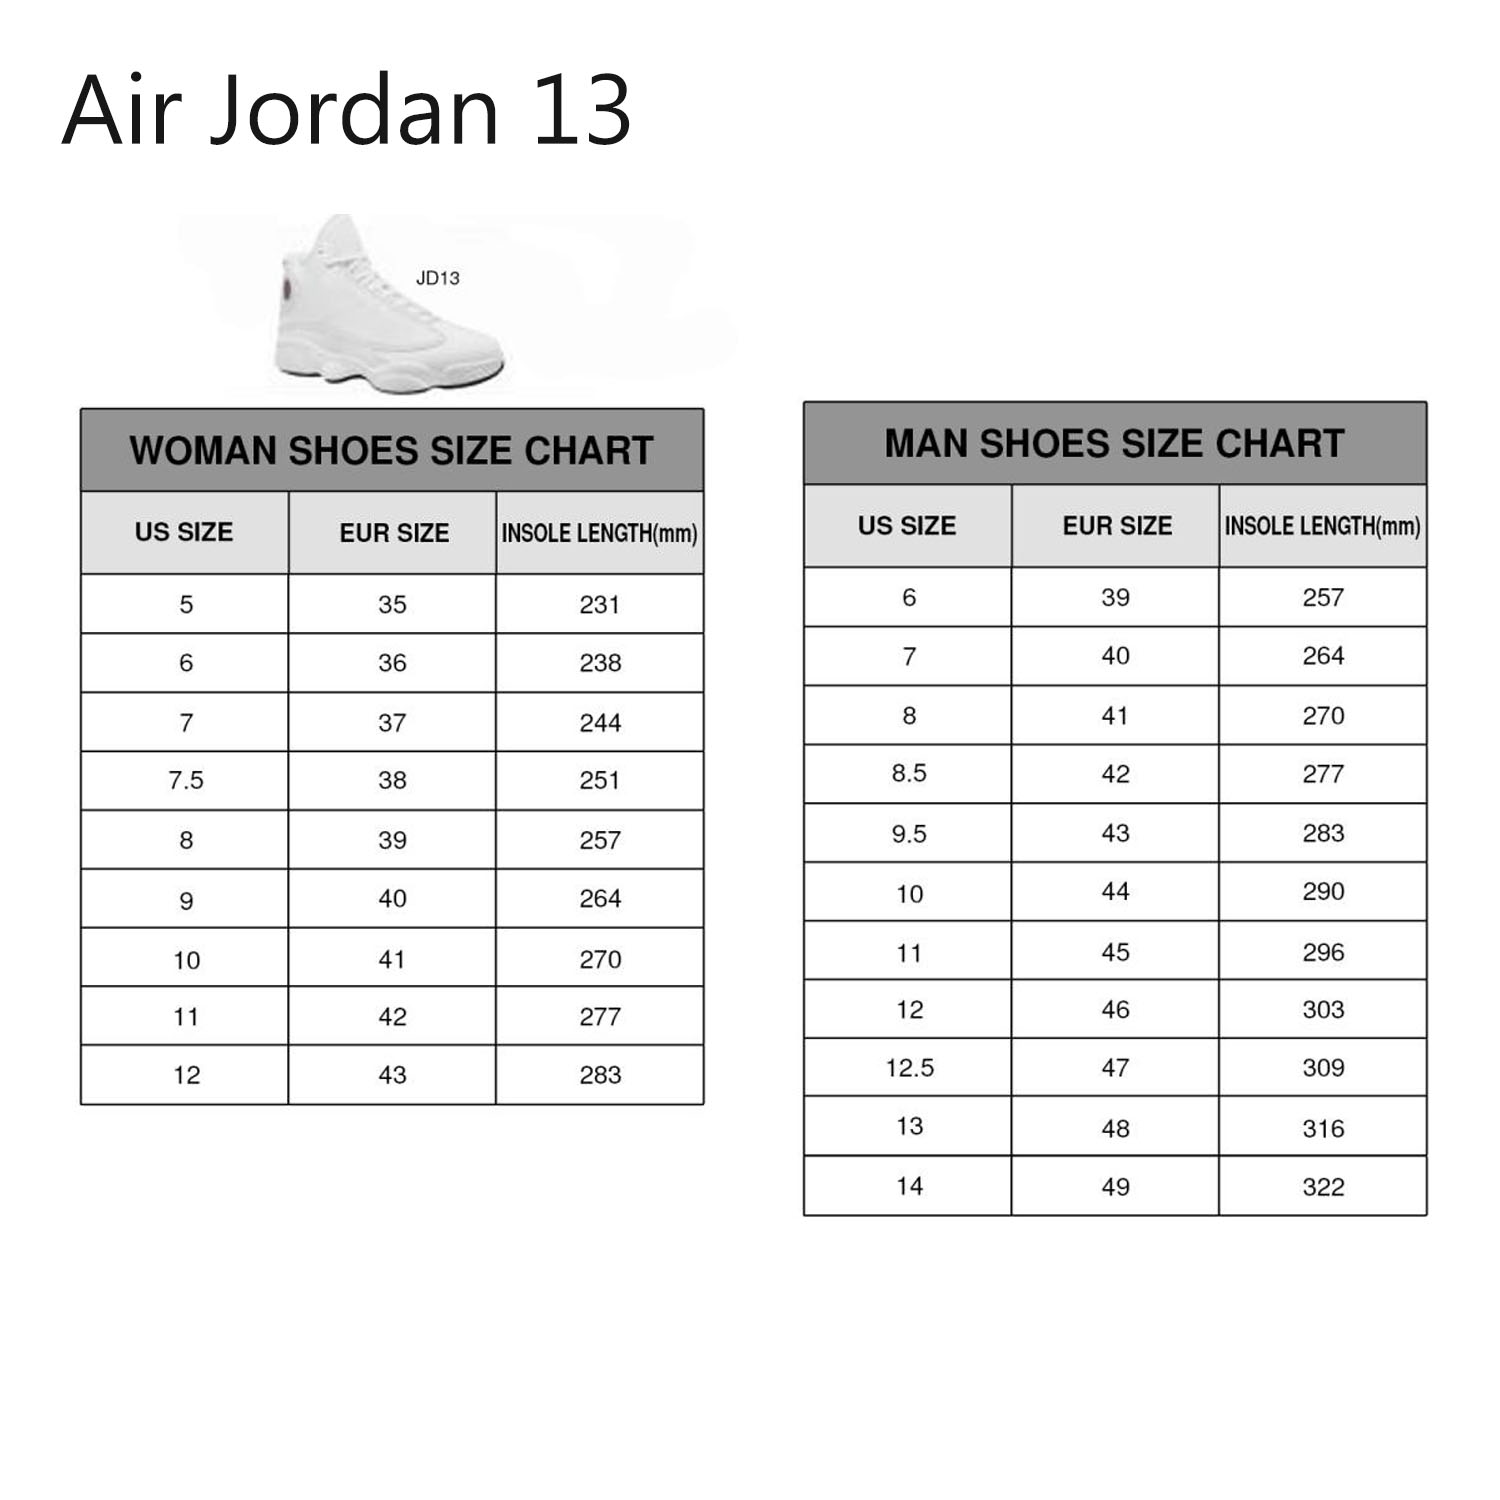 Air Jordan 13 Size Chartpx Hippies Walk By Faith Jesus Air Jordan 13 Shoes